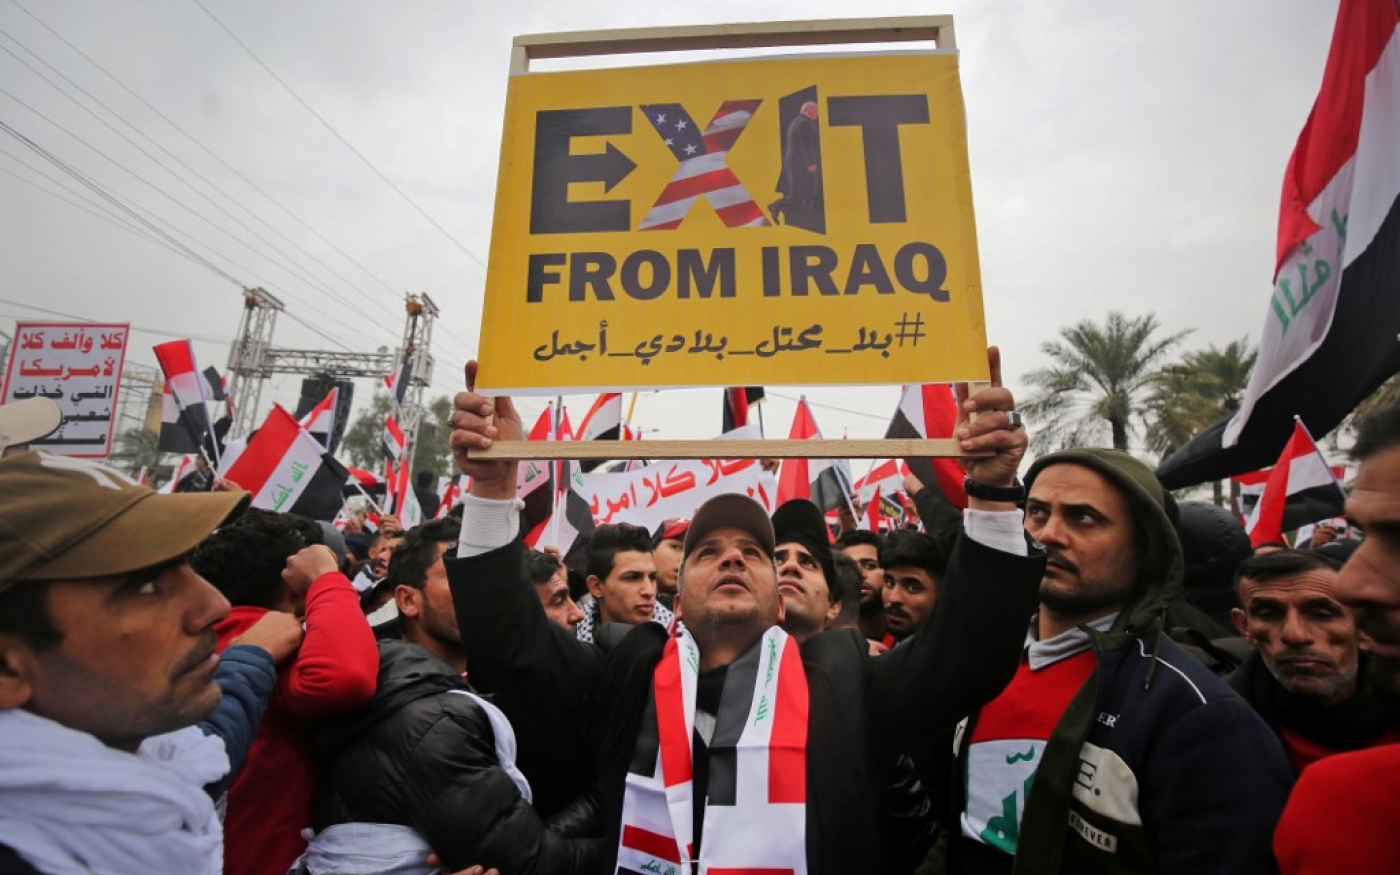 À Bagdad, les partisans de Moqtada al-Sadr manifestent pour exiger la fin de la présence des forces américaines dans leur pays, le 24 janvier 2020 (AFP)